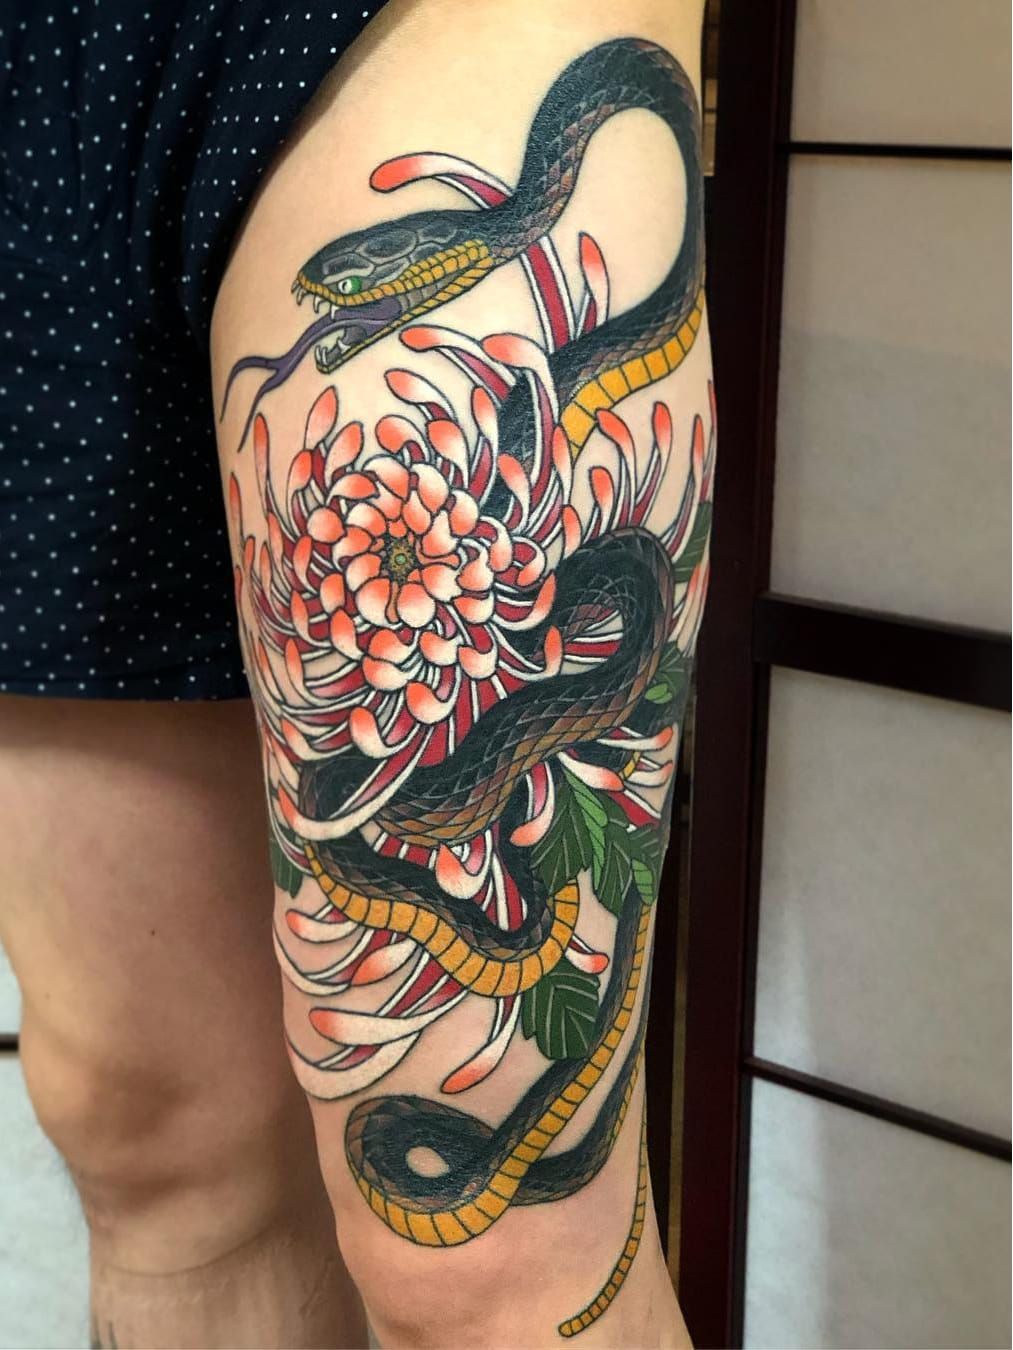 งานแกมนหนนกกตองแกดวยกอนหน tattoo japanesetattoo ink  tattooidea coverup  Japanese flower tattoo Japanese tattoo symbols  Japanese tattoo designs